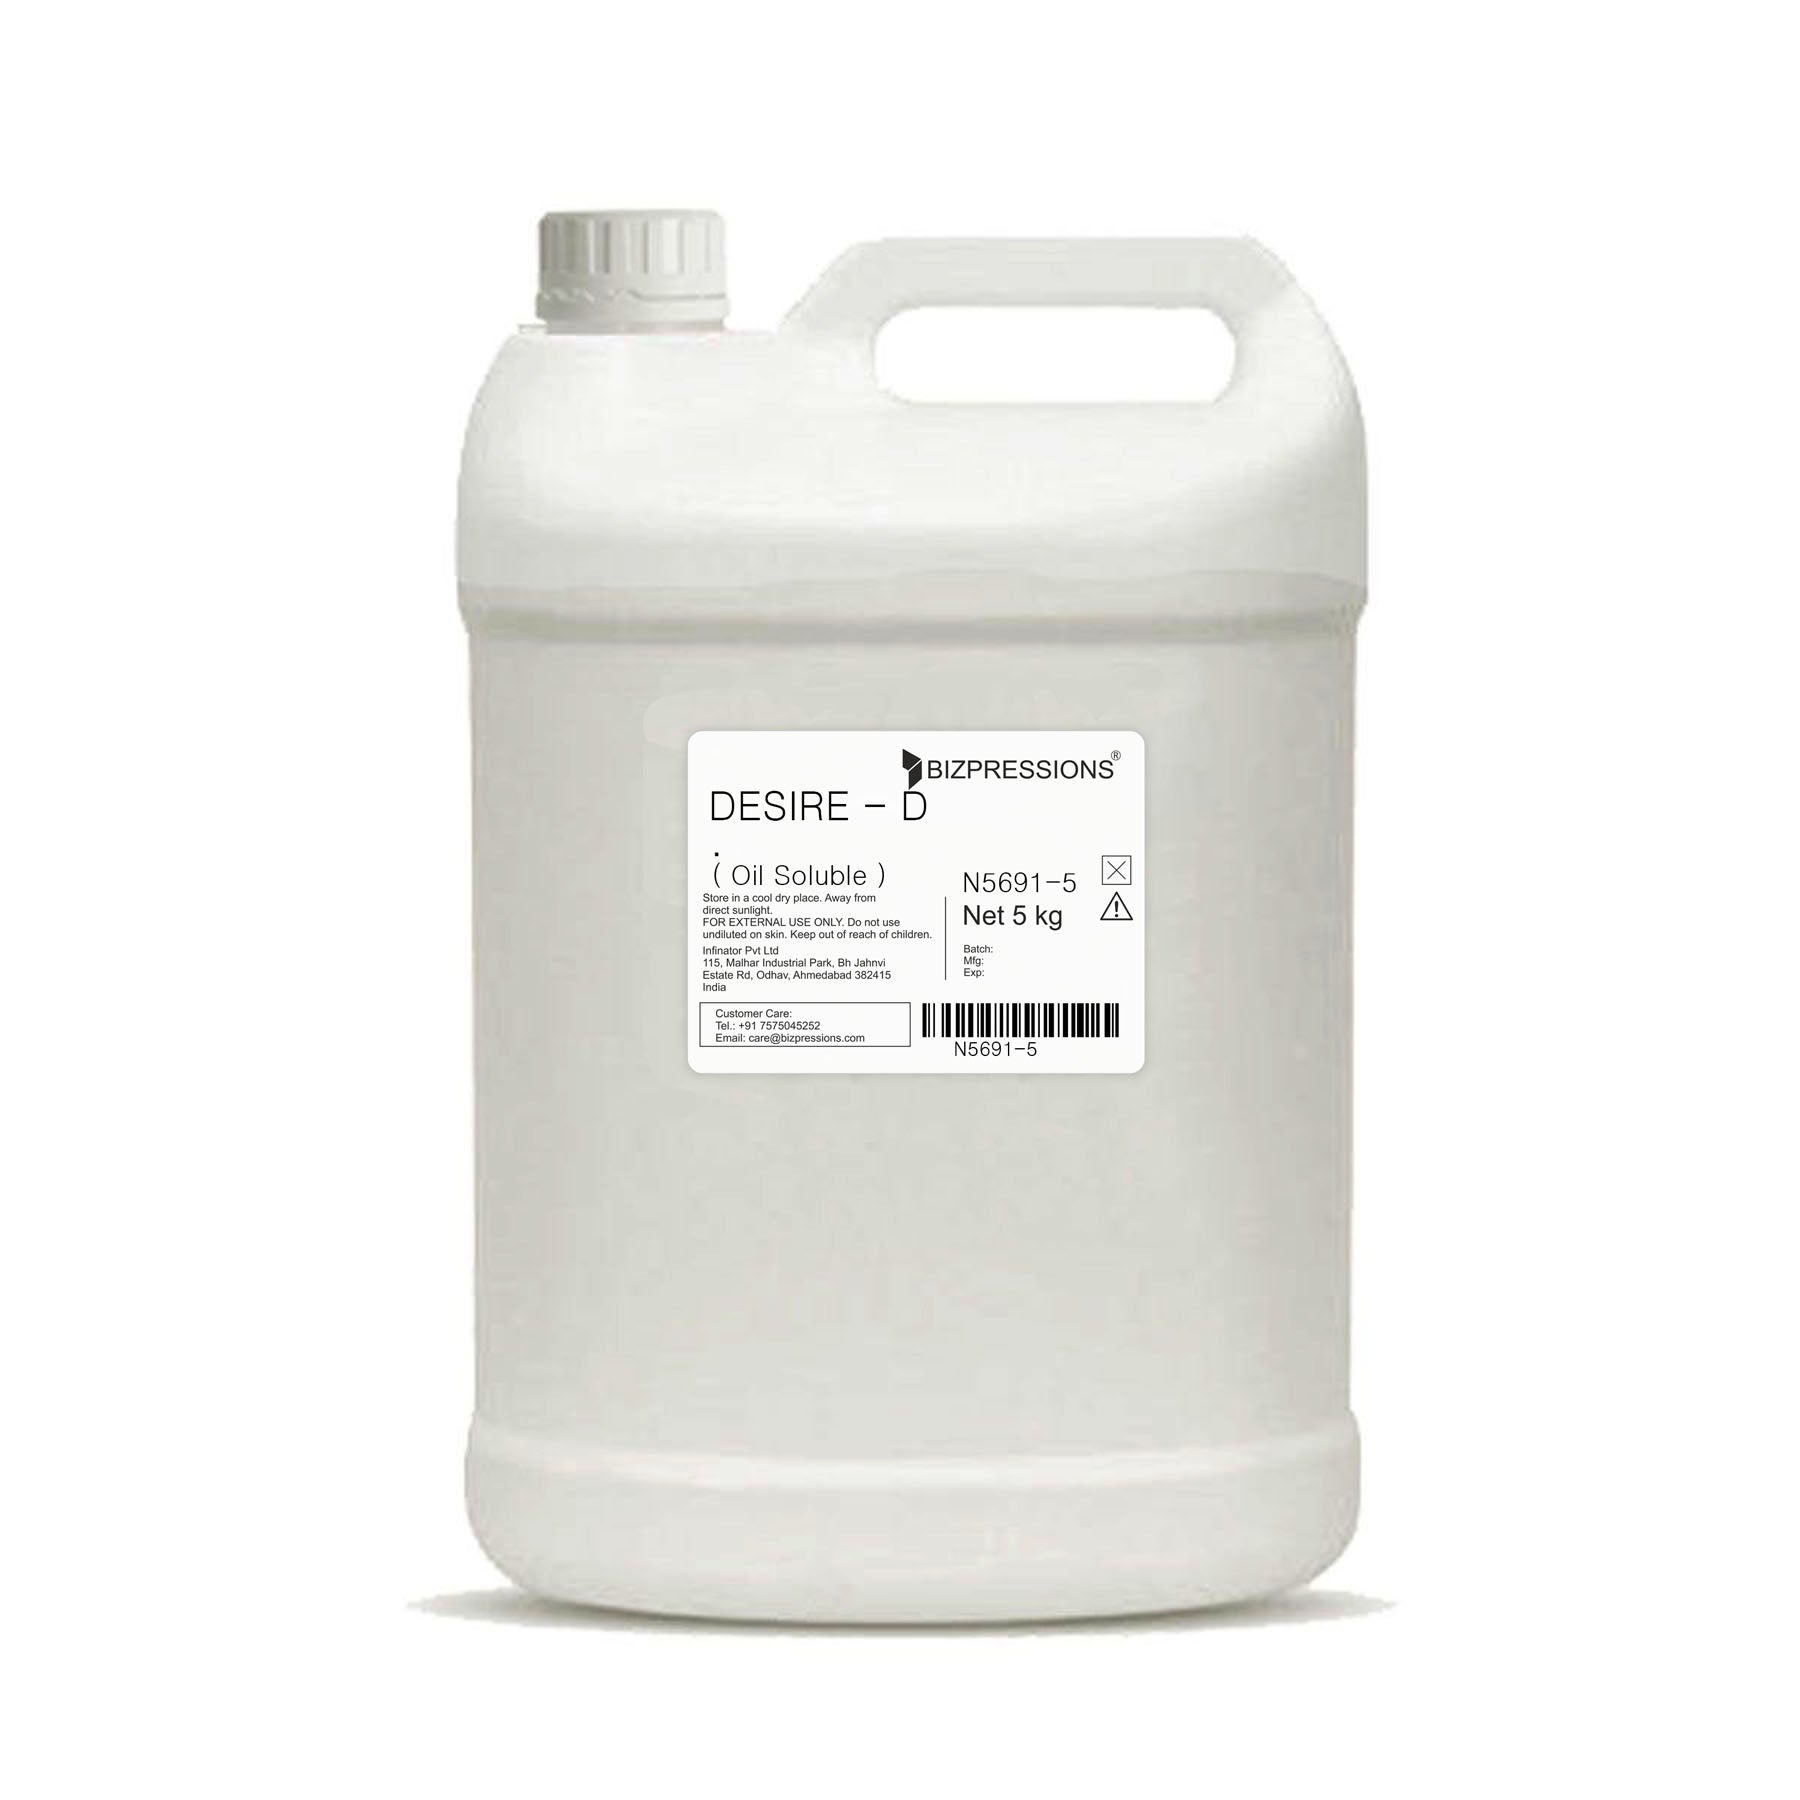 DESIRE - D - Fragrance ( Oil Soluble ) - 5 kg